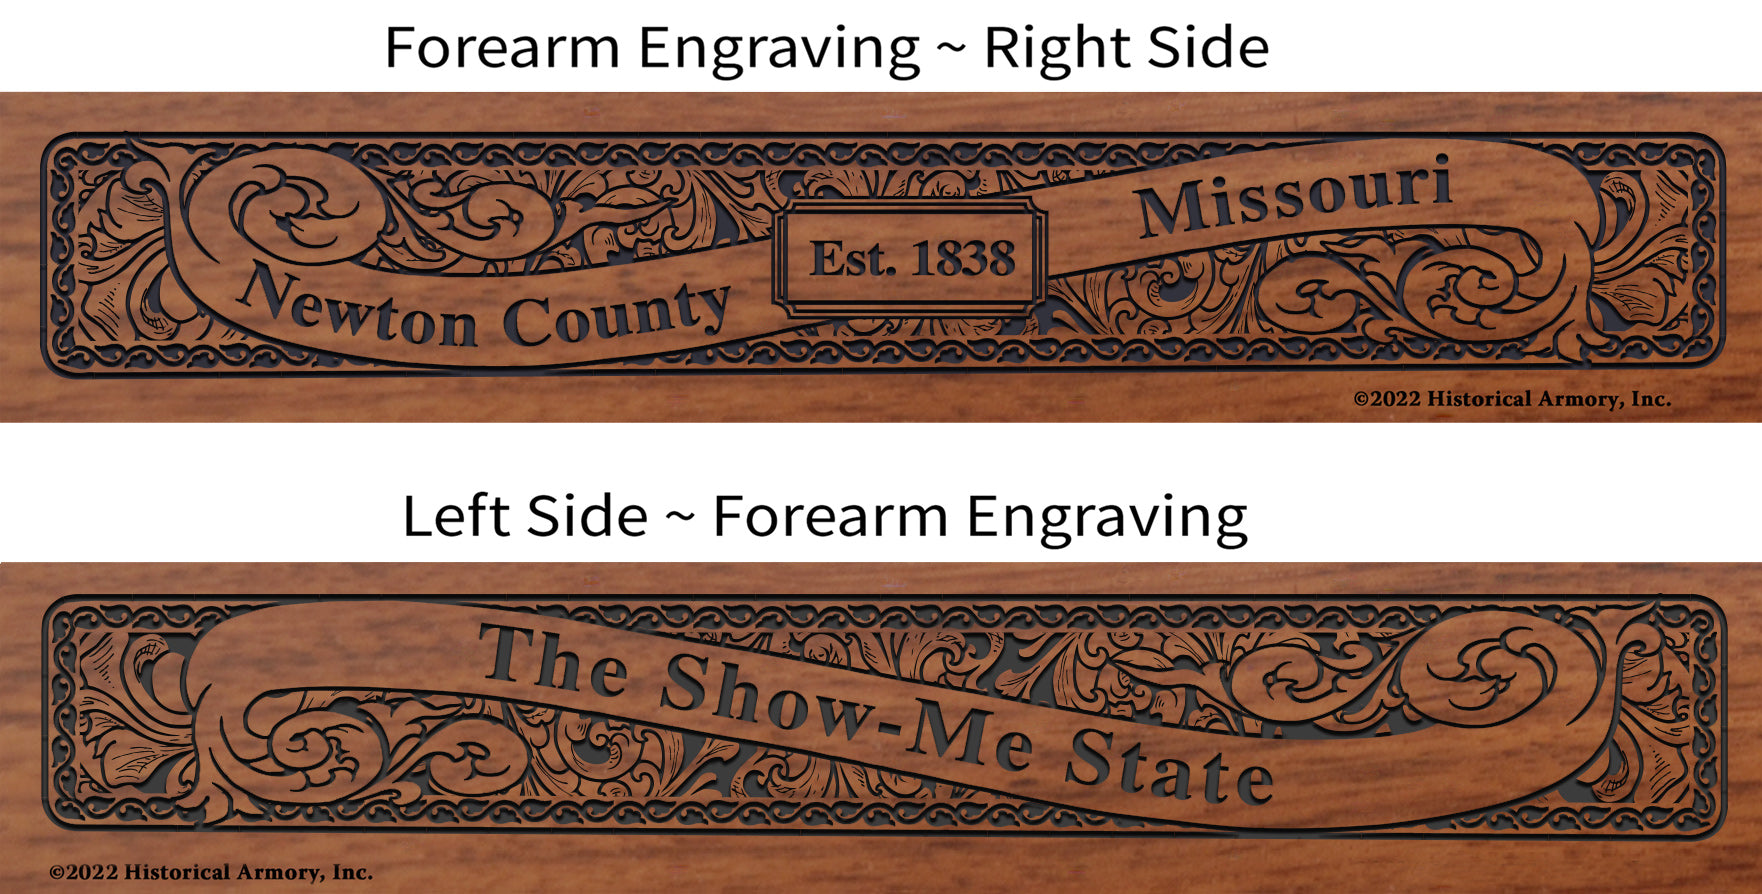 Newton County Missouri Engraved Rifle Forearm